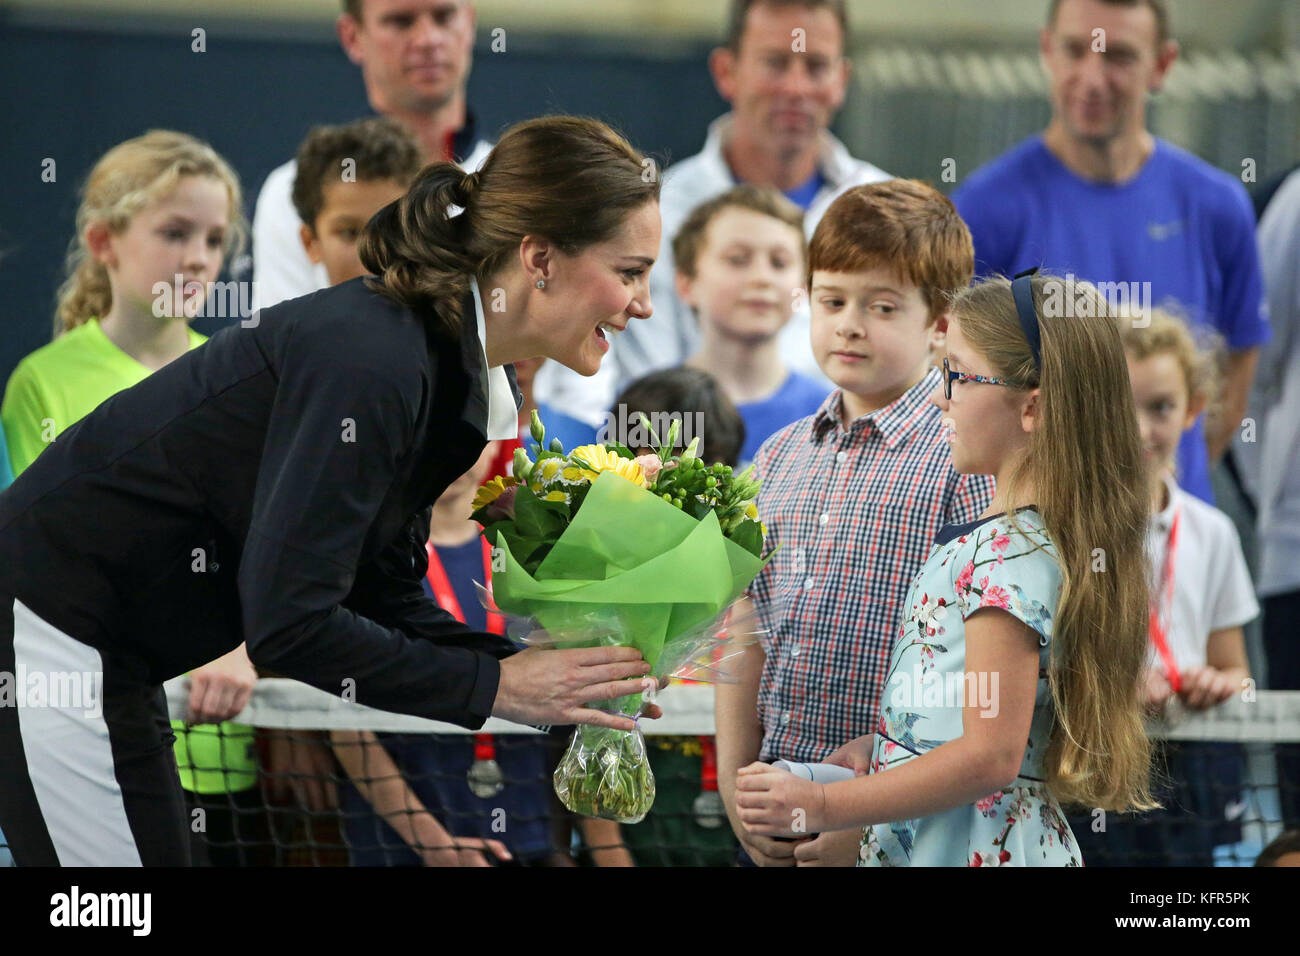 La duchesse de Cambridge (à gauche) reçoit un bouquet de fleurs lors d'une visite à la lawn tennis association (LTA) à la National Tennis Center dans le sud-ouest de Londres. Banque D'Images